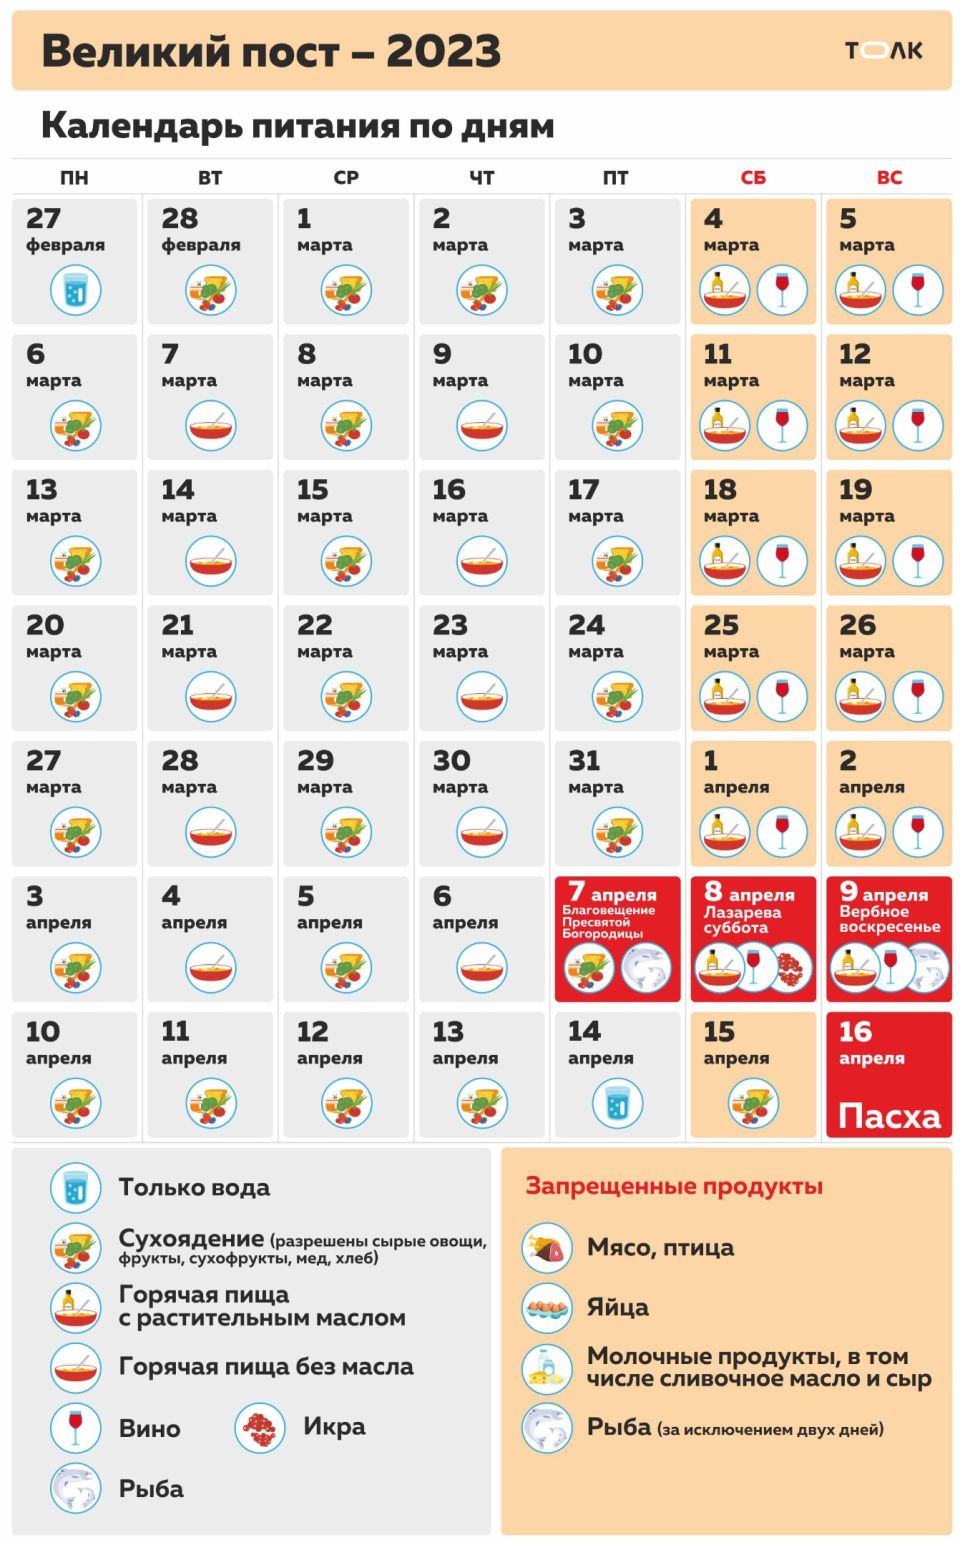 Календарь питания по дням в Великий пост в 2023 году. Инфографика - Толк  27.02.2023